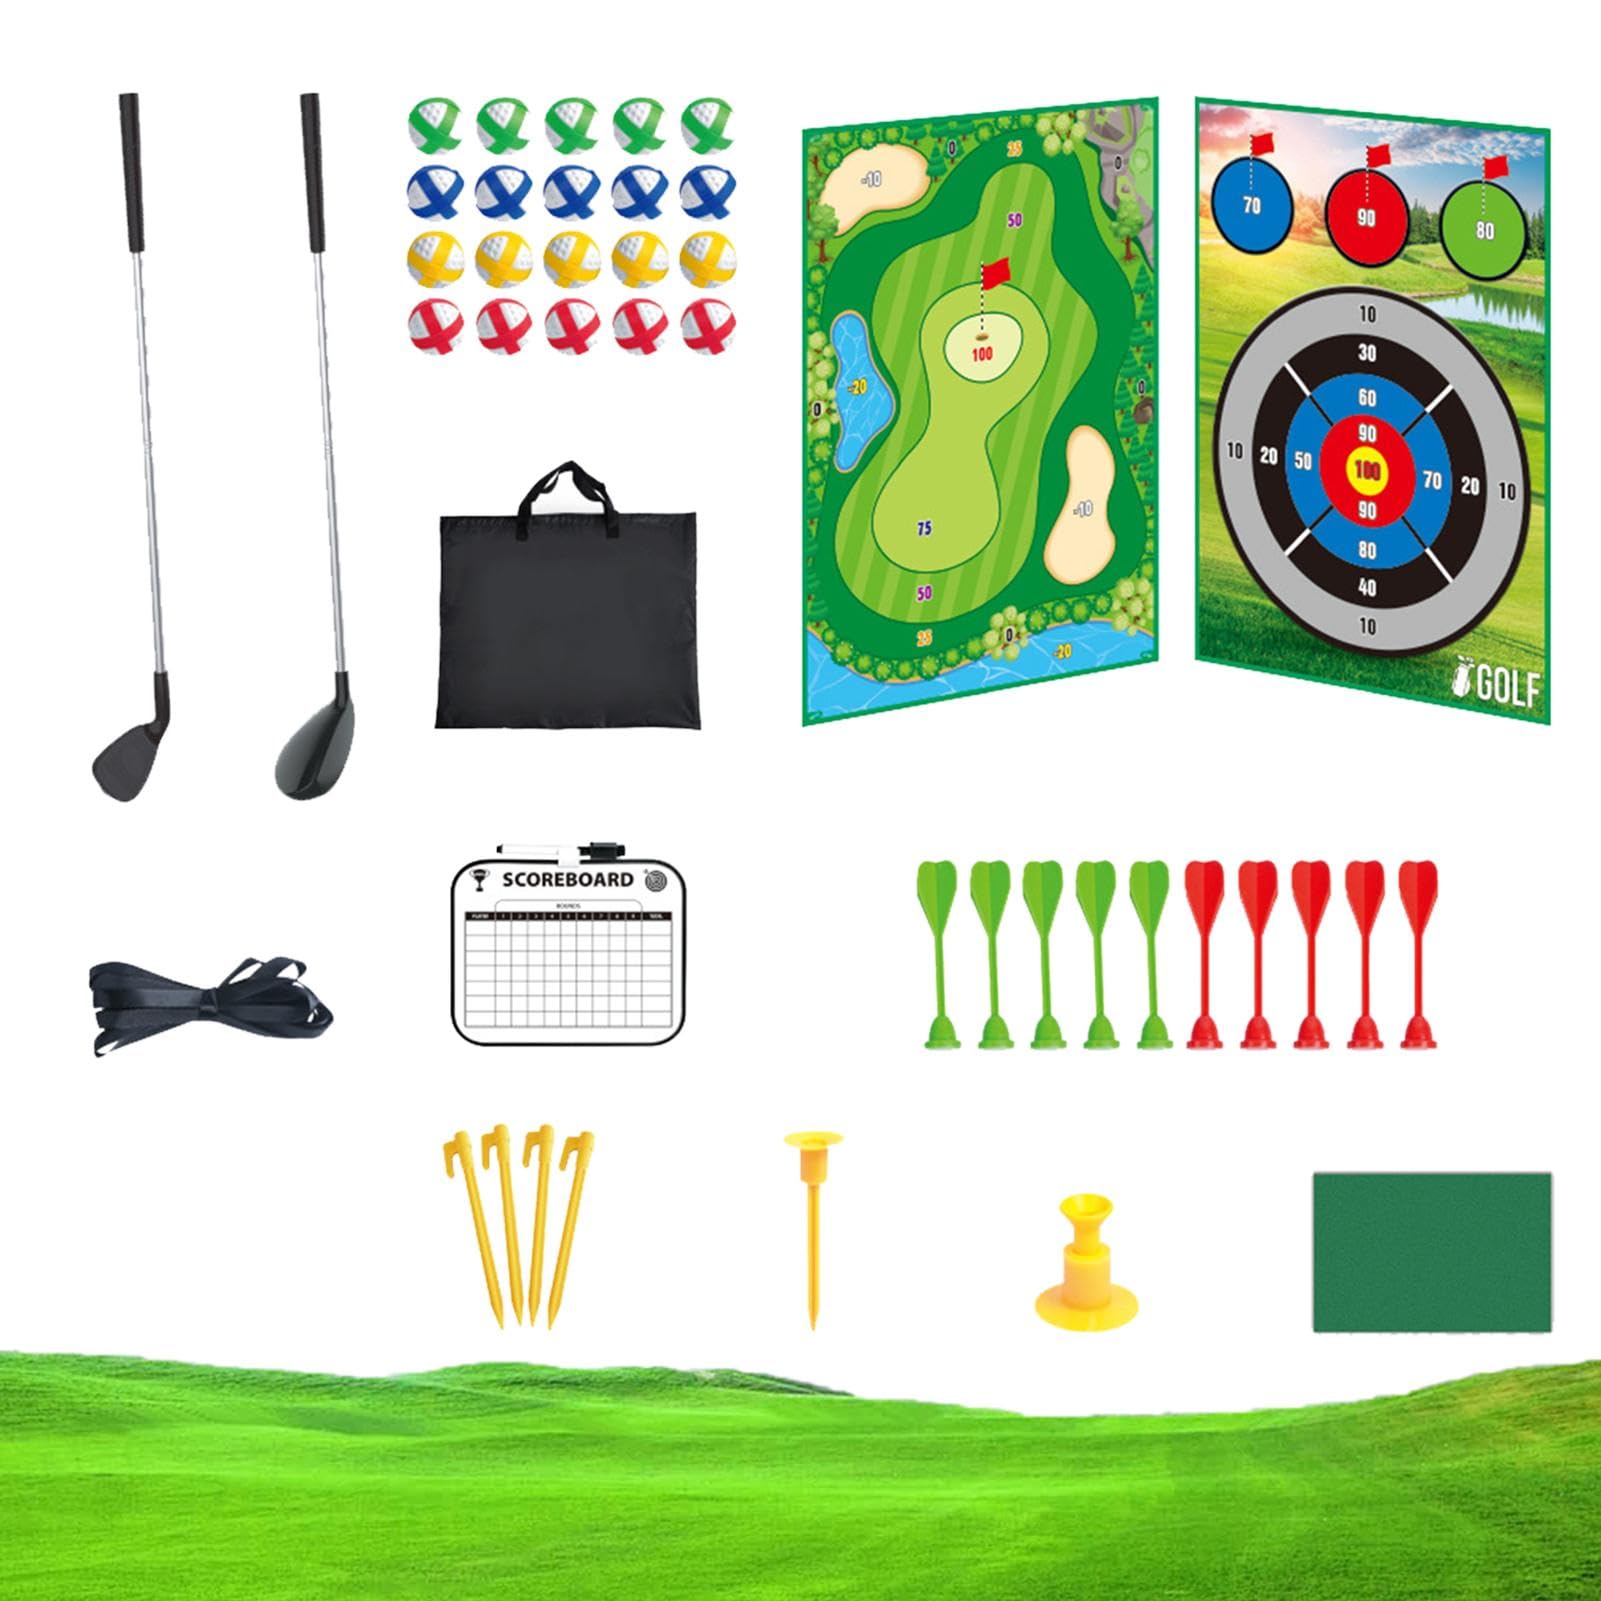 NEFLUM Golfspielzeug-Set, Kinder-Golfschläger-Set, Golf-Putting-Spiel, Indoor-Outdoor-Sportspielzeug, Golfball-Spielset, Golf-Putting-Spiel, Sport-Golfspielzeug für Kinder im Alter von 3–8 Jahren